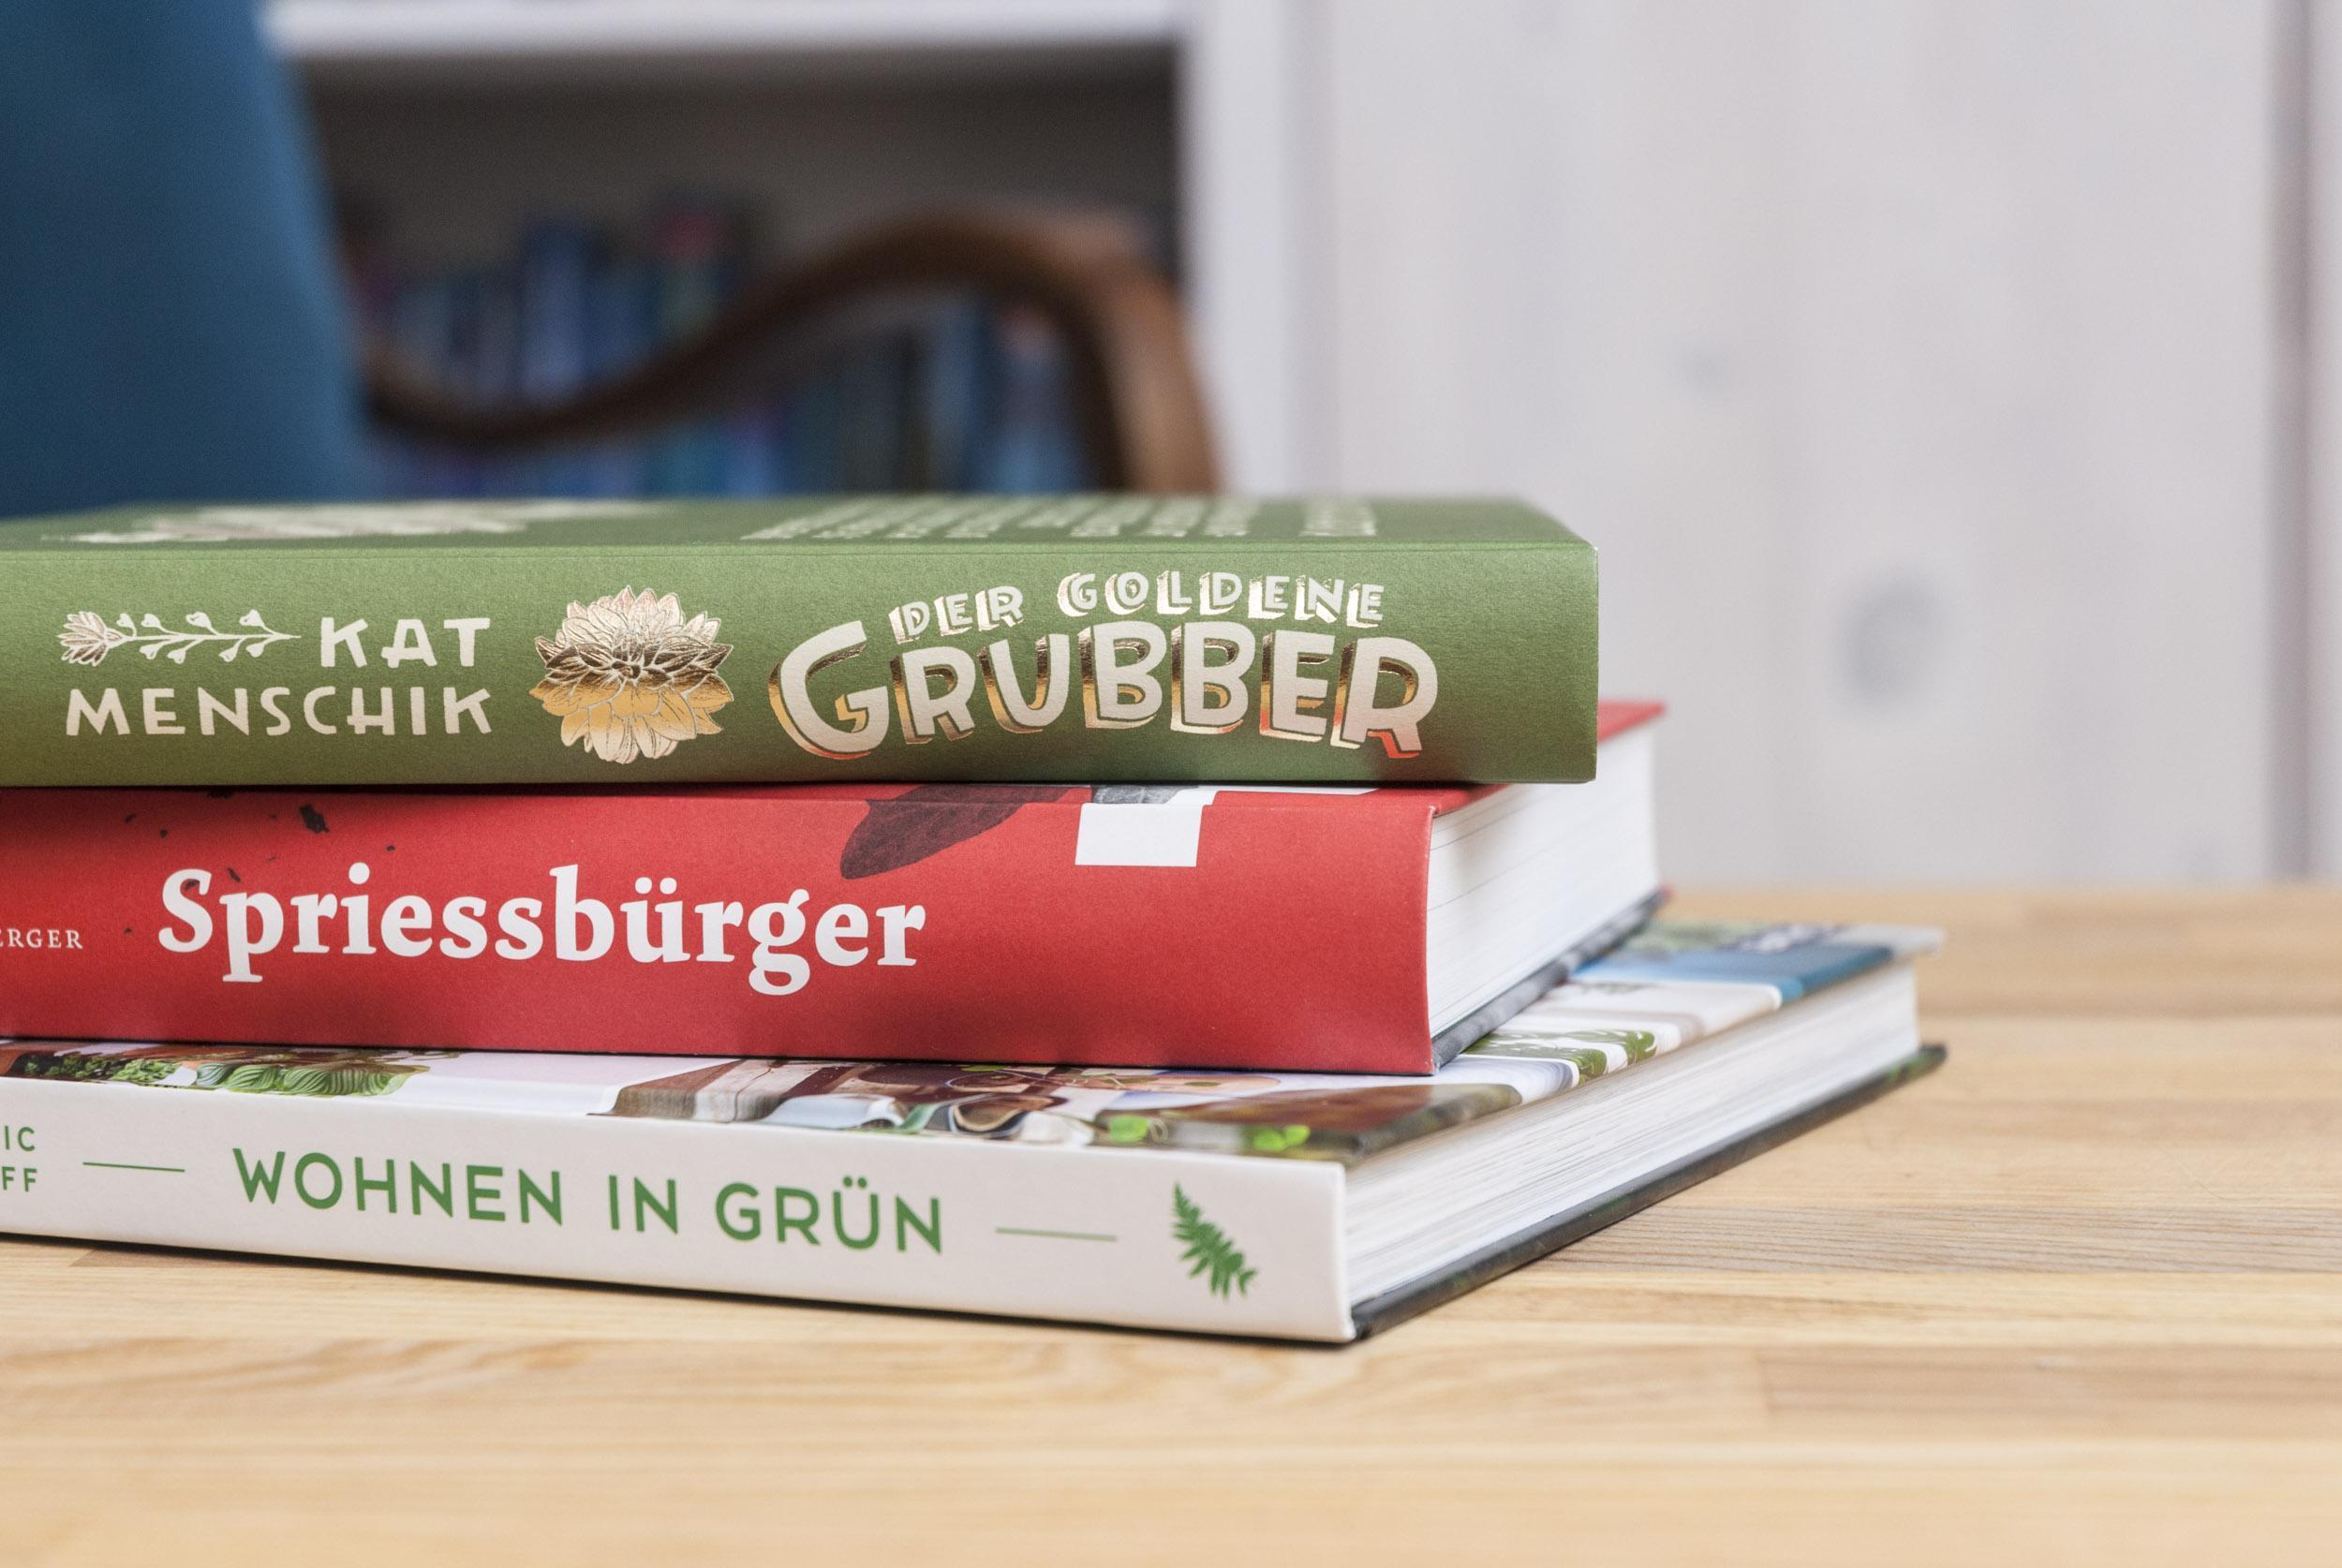 Der goldene Grubber, Spriessbürger, Wohnen in Grün: Drei Bücher liegen aufeinander gestapelt auf einem Tisch.